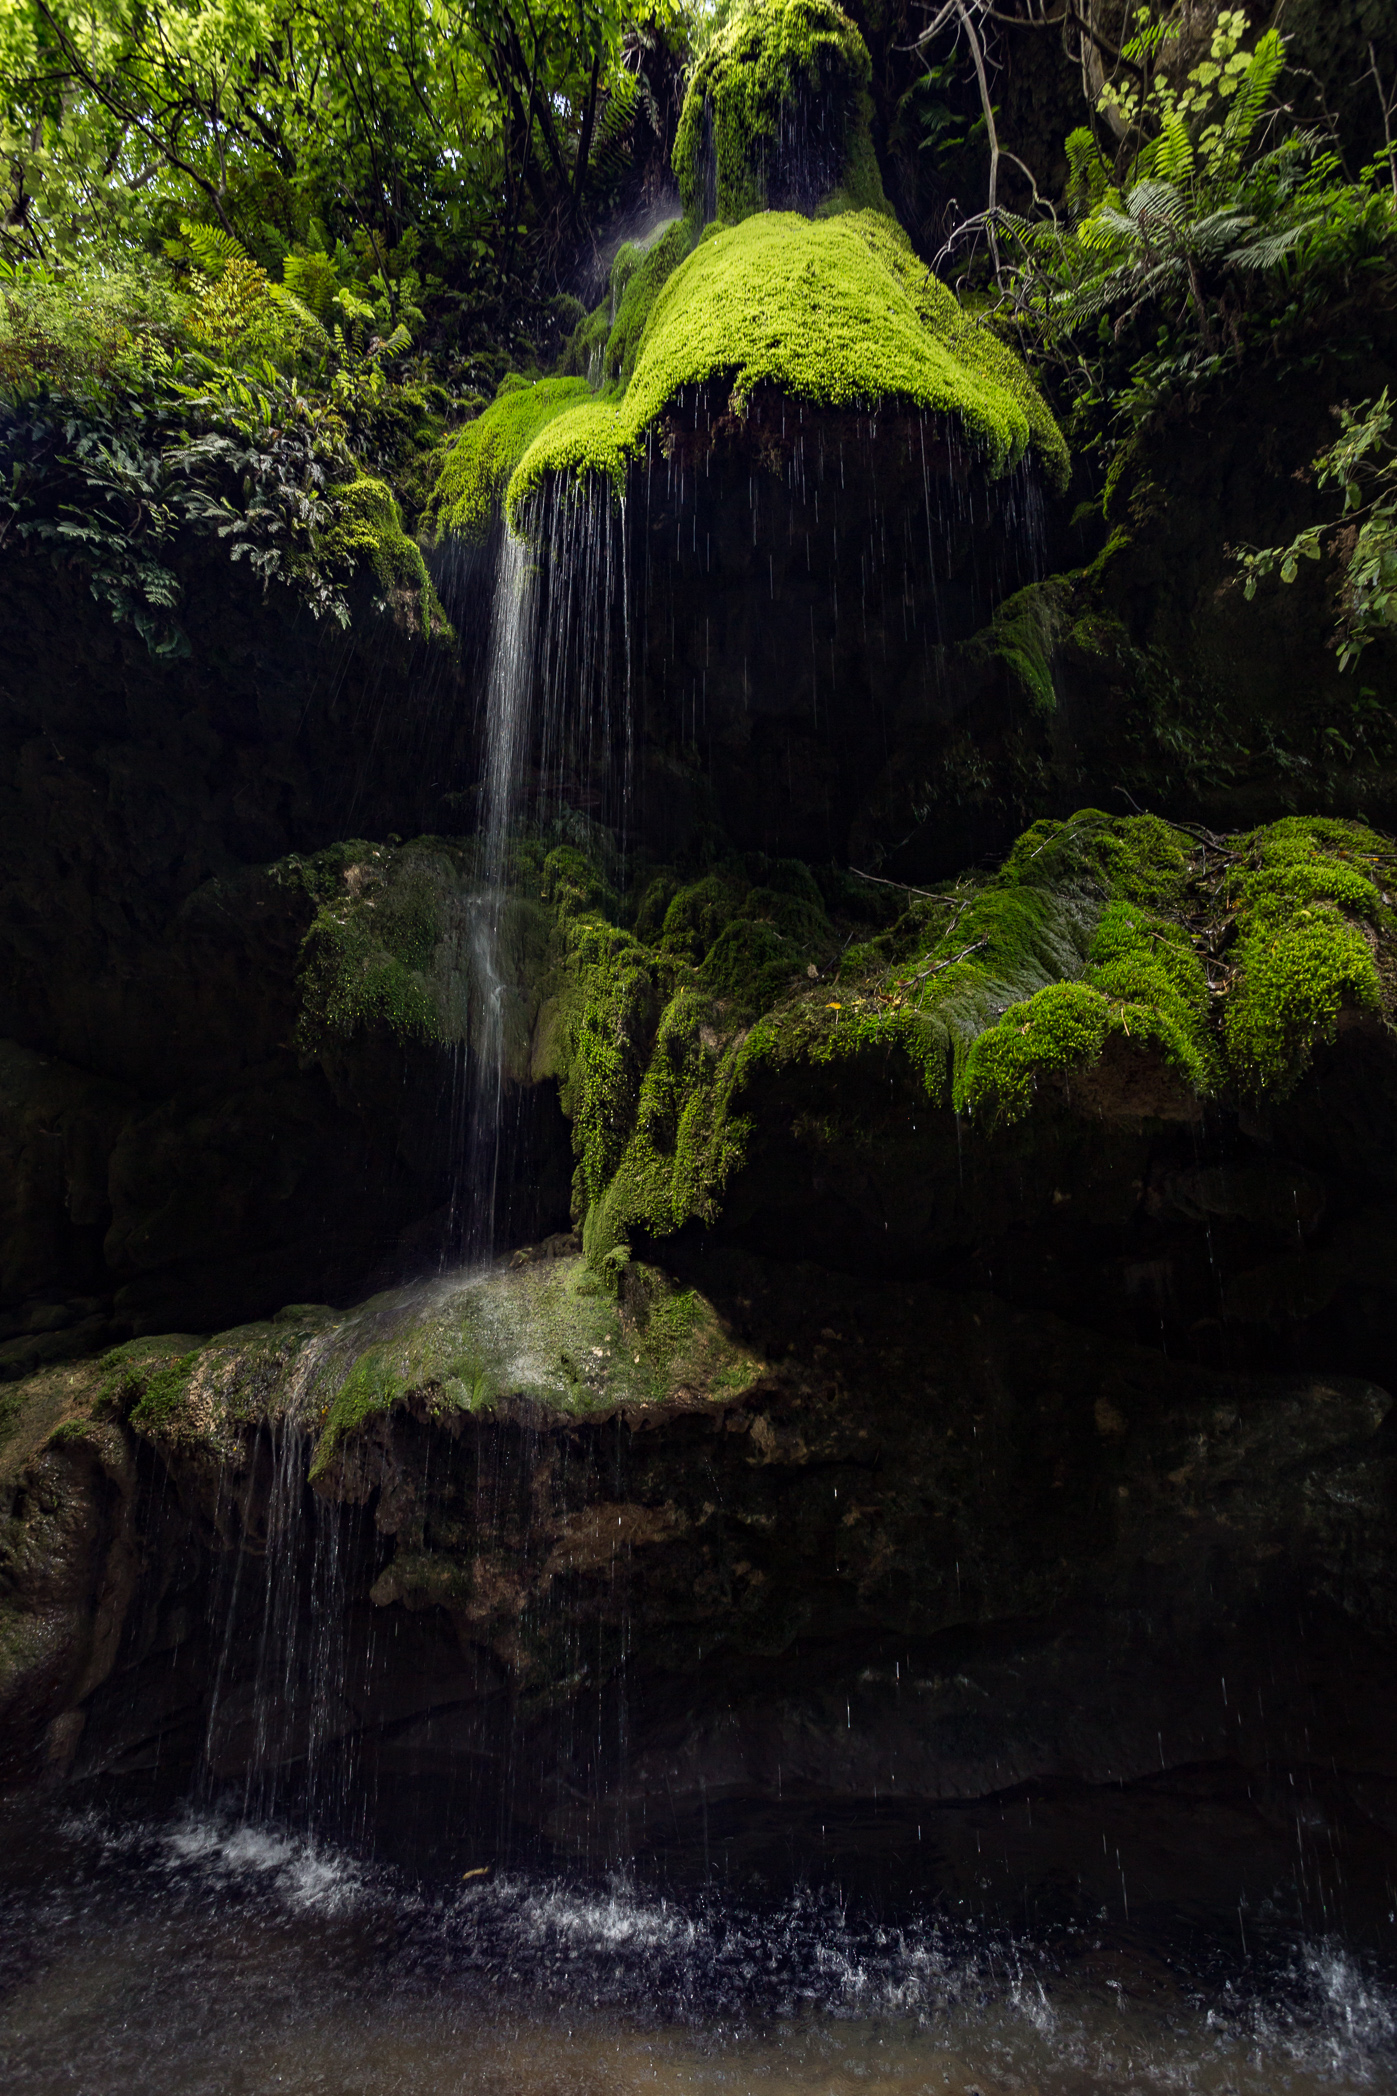 The upstream waterfall